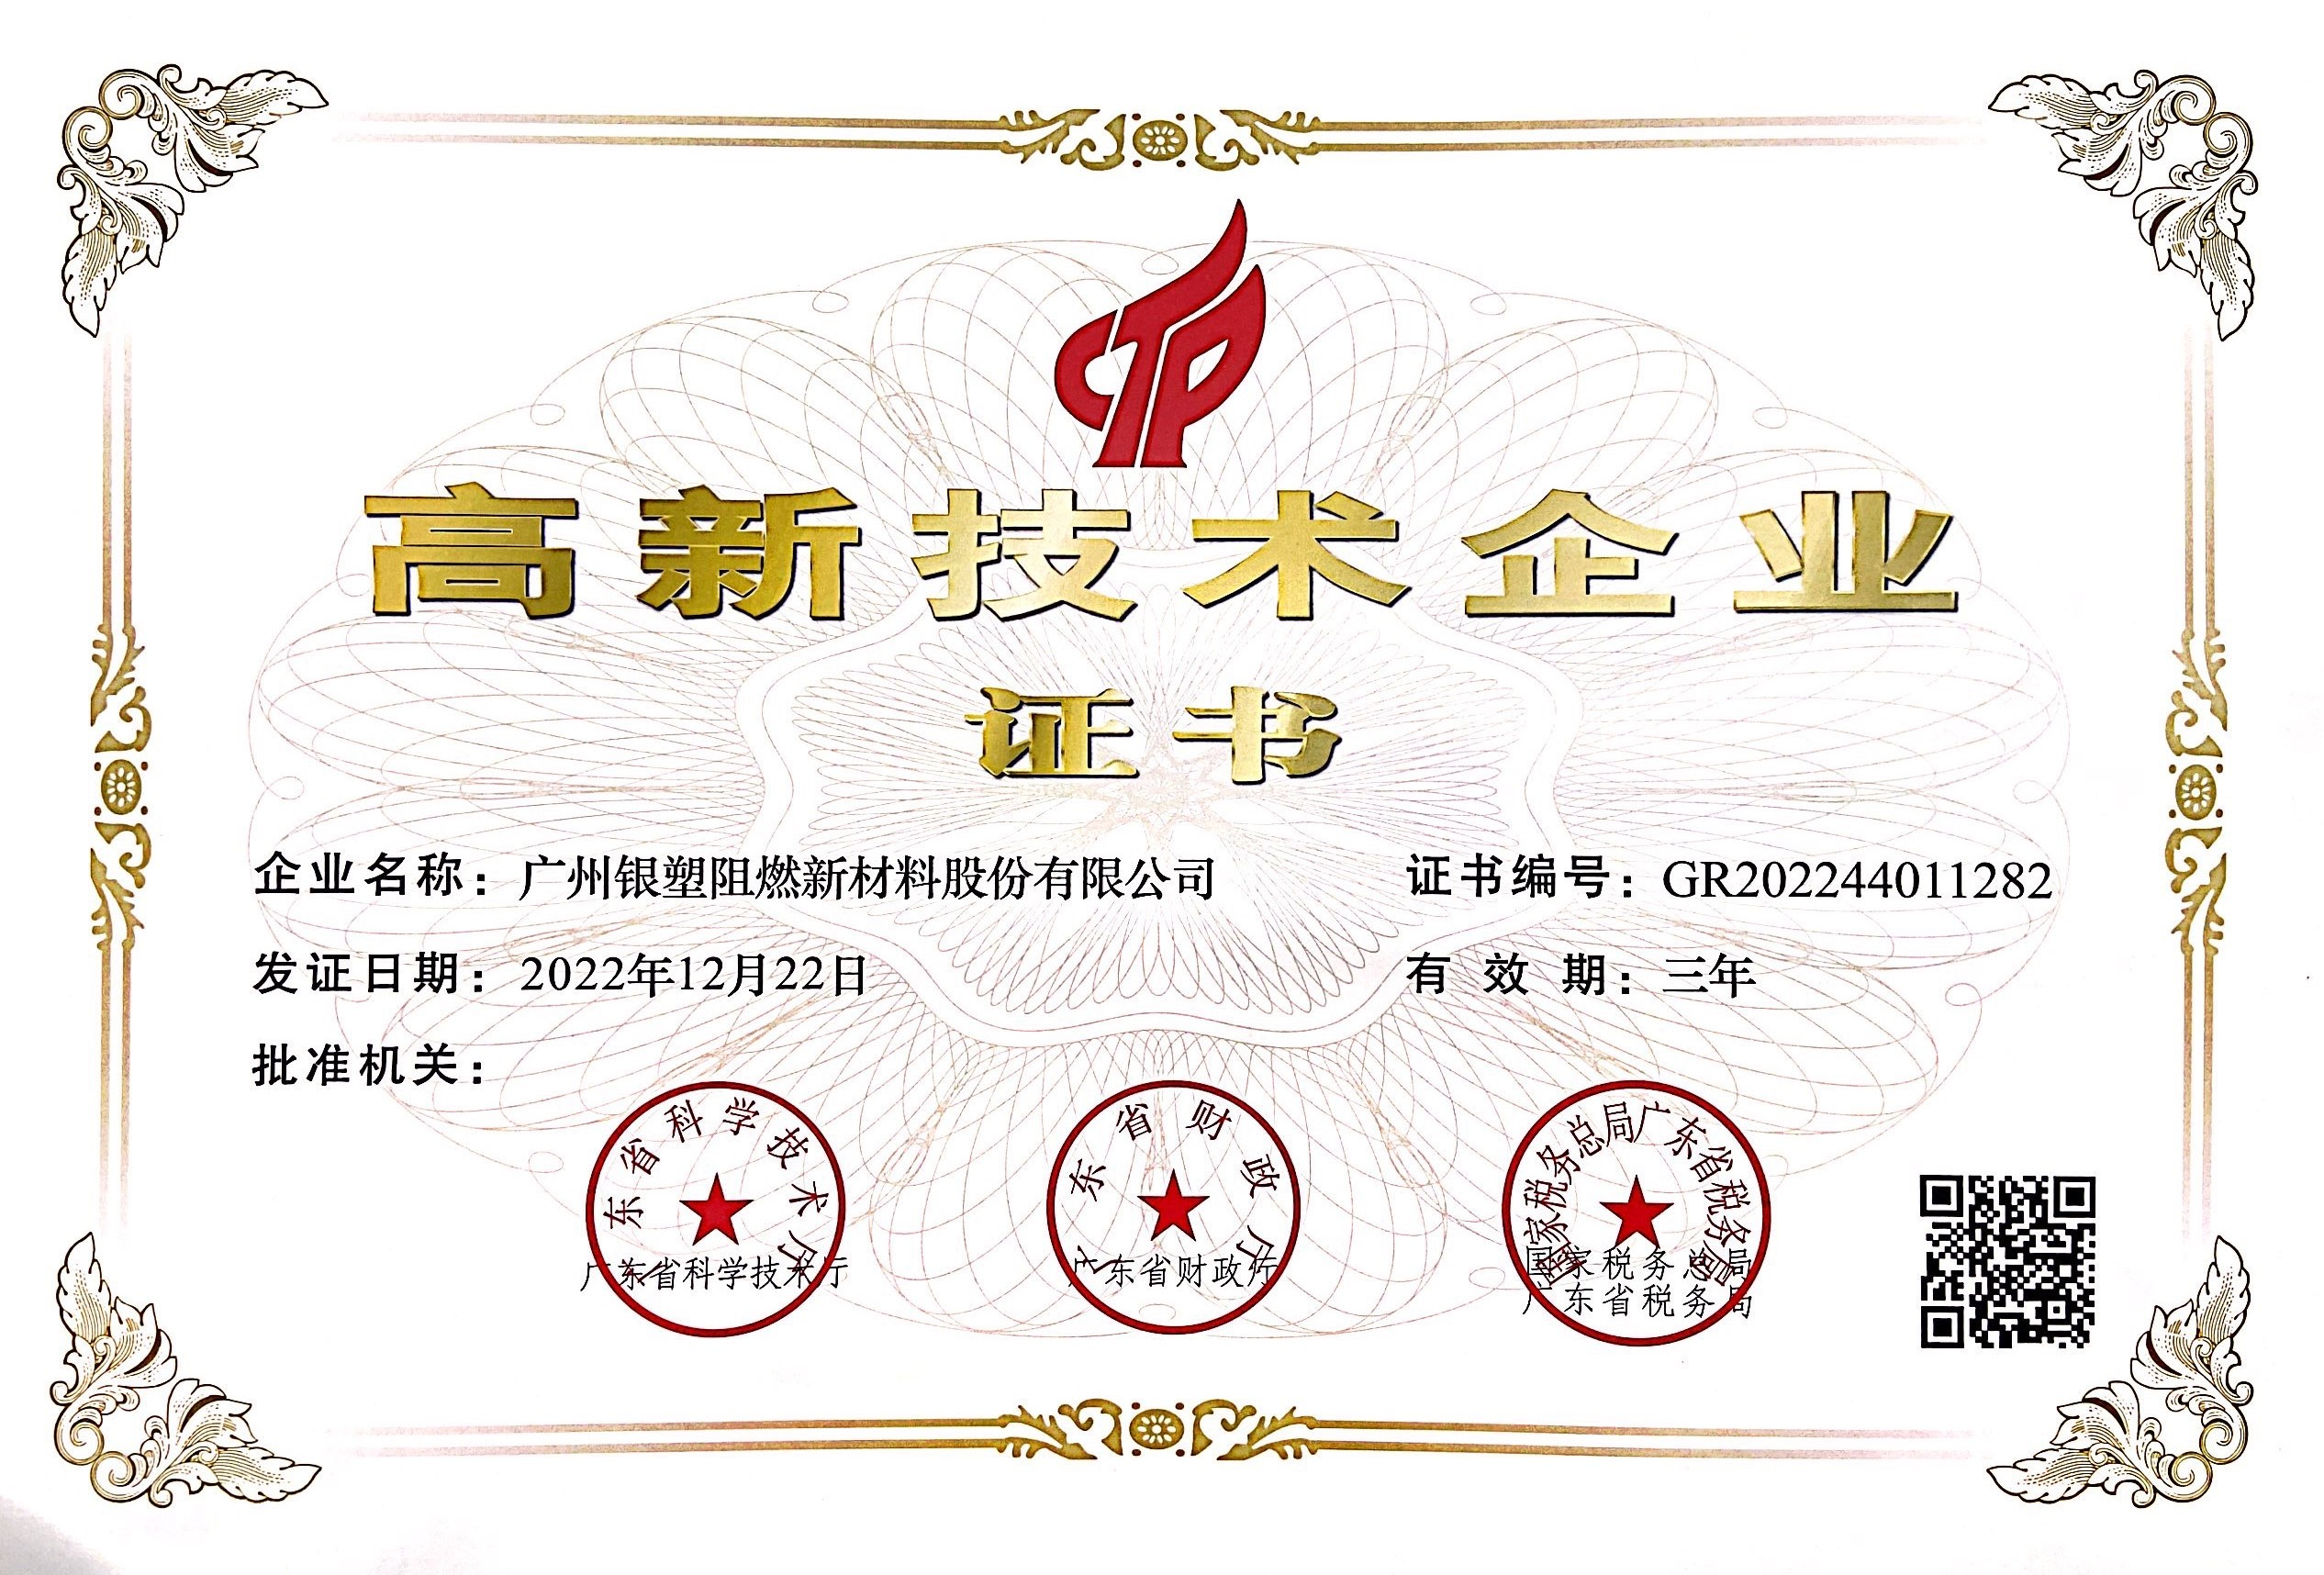 Bonne nouvelle - Yinsu Flame Retardant a de nouveau reçu le titre d''entreprise nationale de haute technologie'